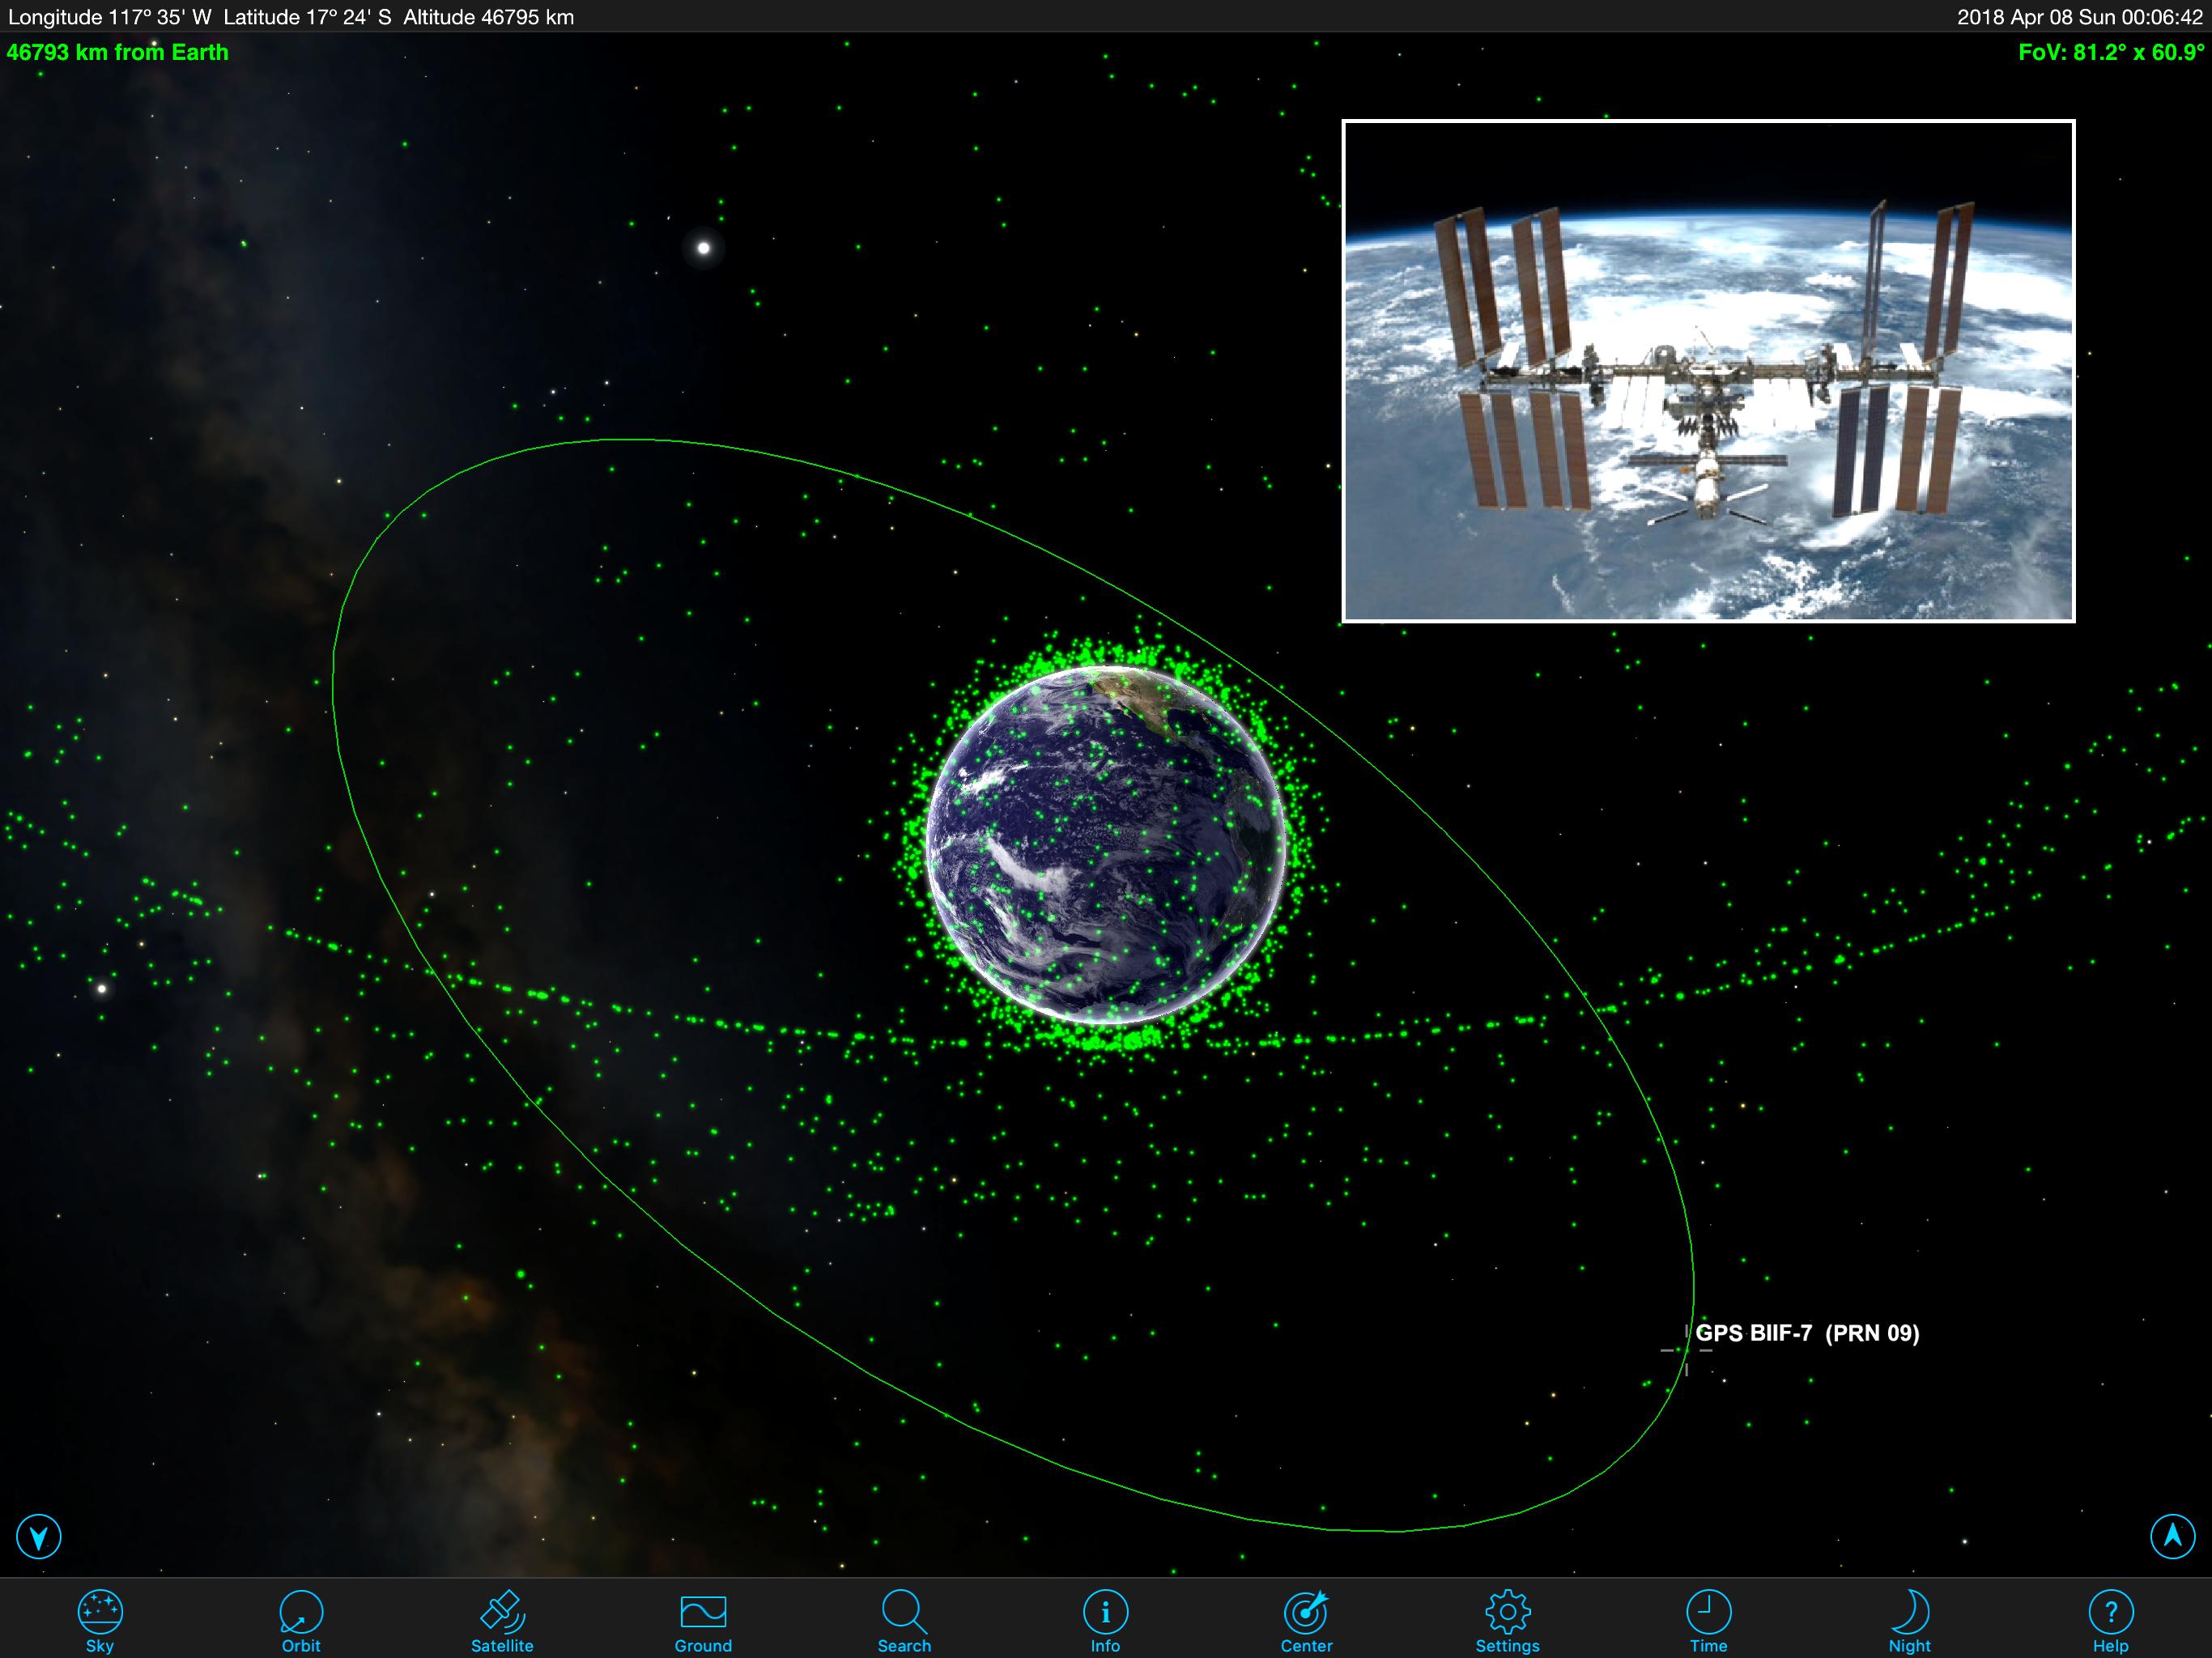 orbiting satellites and iridium flares